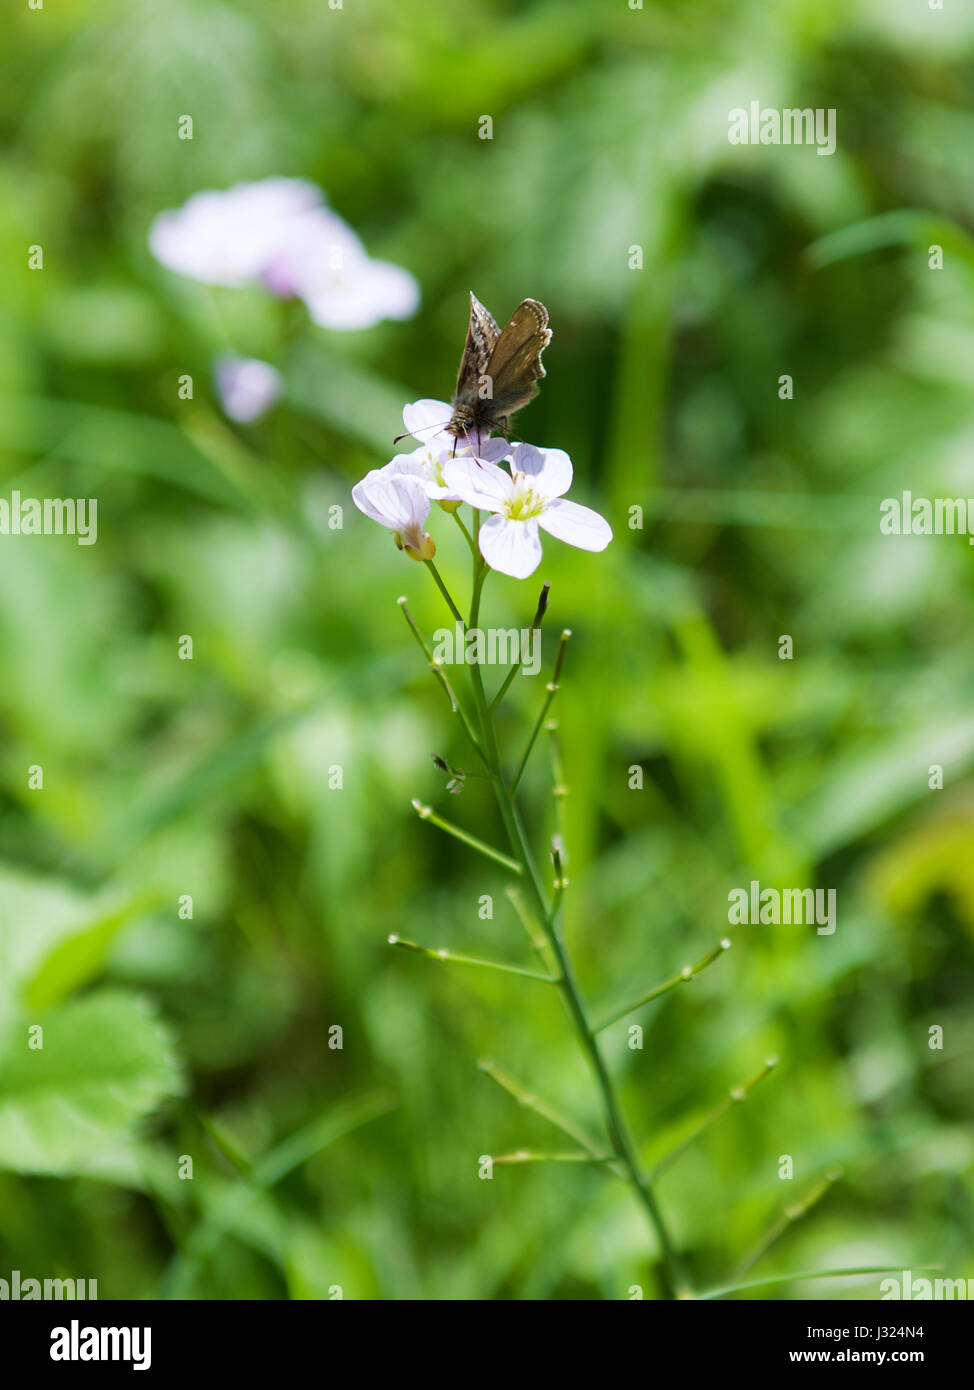 Colley Hill, Reigate, Surrey. Dienstag, 2. Mai 2017. Eine seltene und gefährdete schmuddeligen Skipper Butterfly (Erynnis Tages) macht das Beste aus dem warmen Wetter, ernähren sich von Nektar von einem Kuckuck (Damen Kittel) Wild Blume an den Hängen des Hügels Colley, Reigate, Surrey. Foto von © Lindsay Constable / Alamy Live News Stockfoto